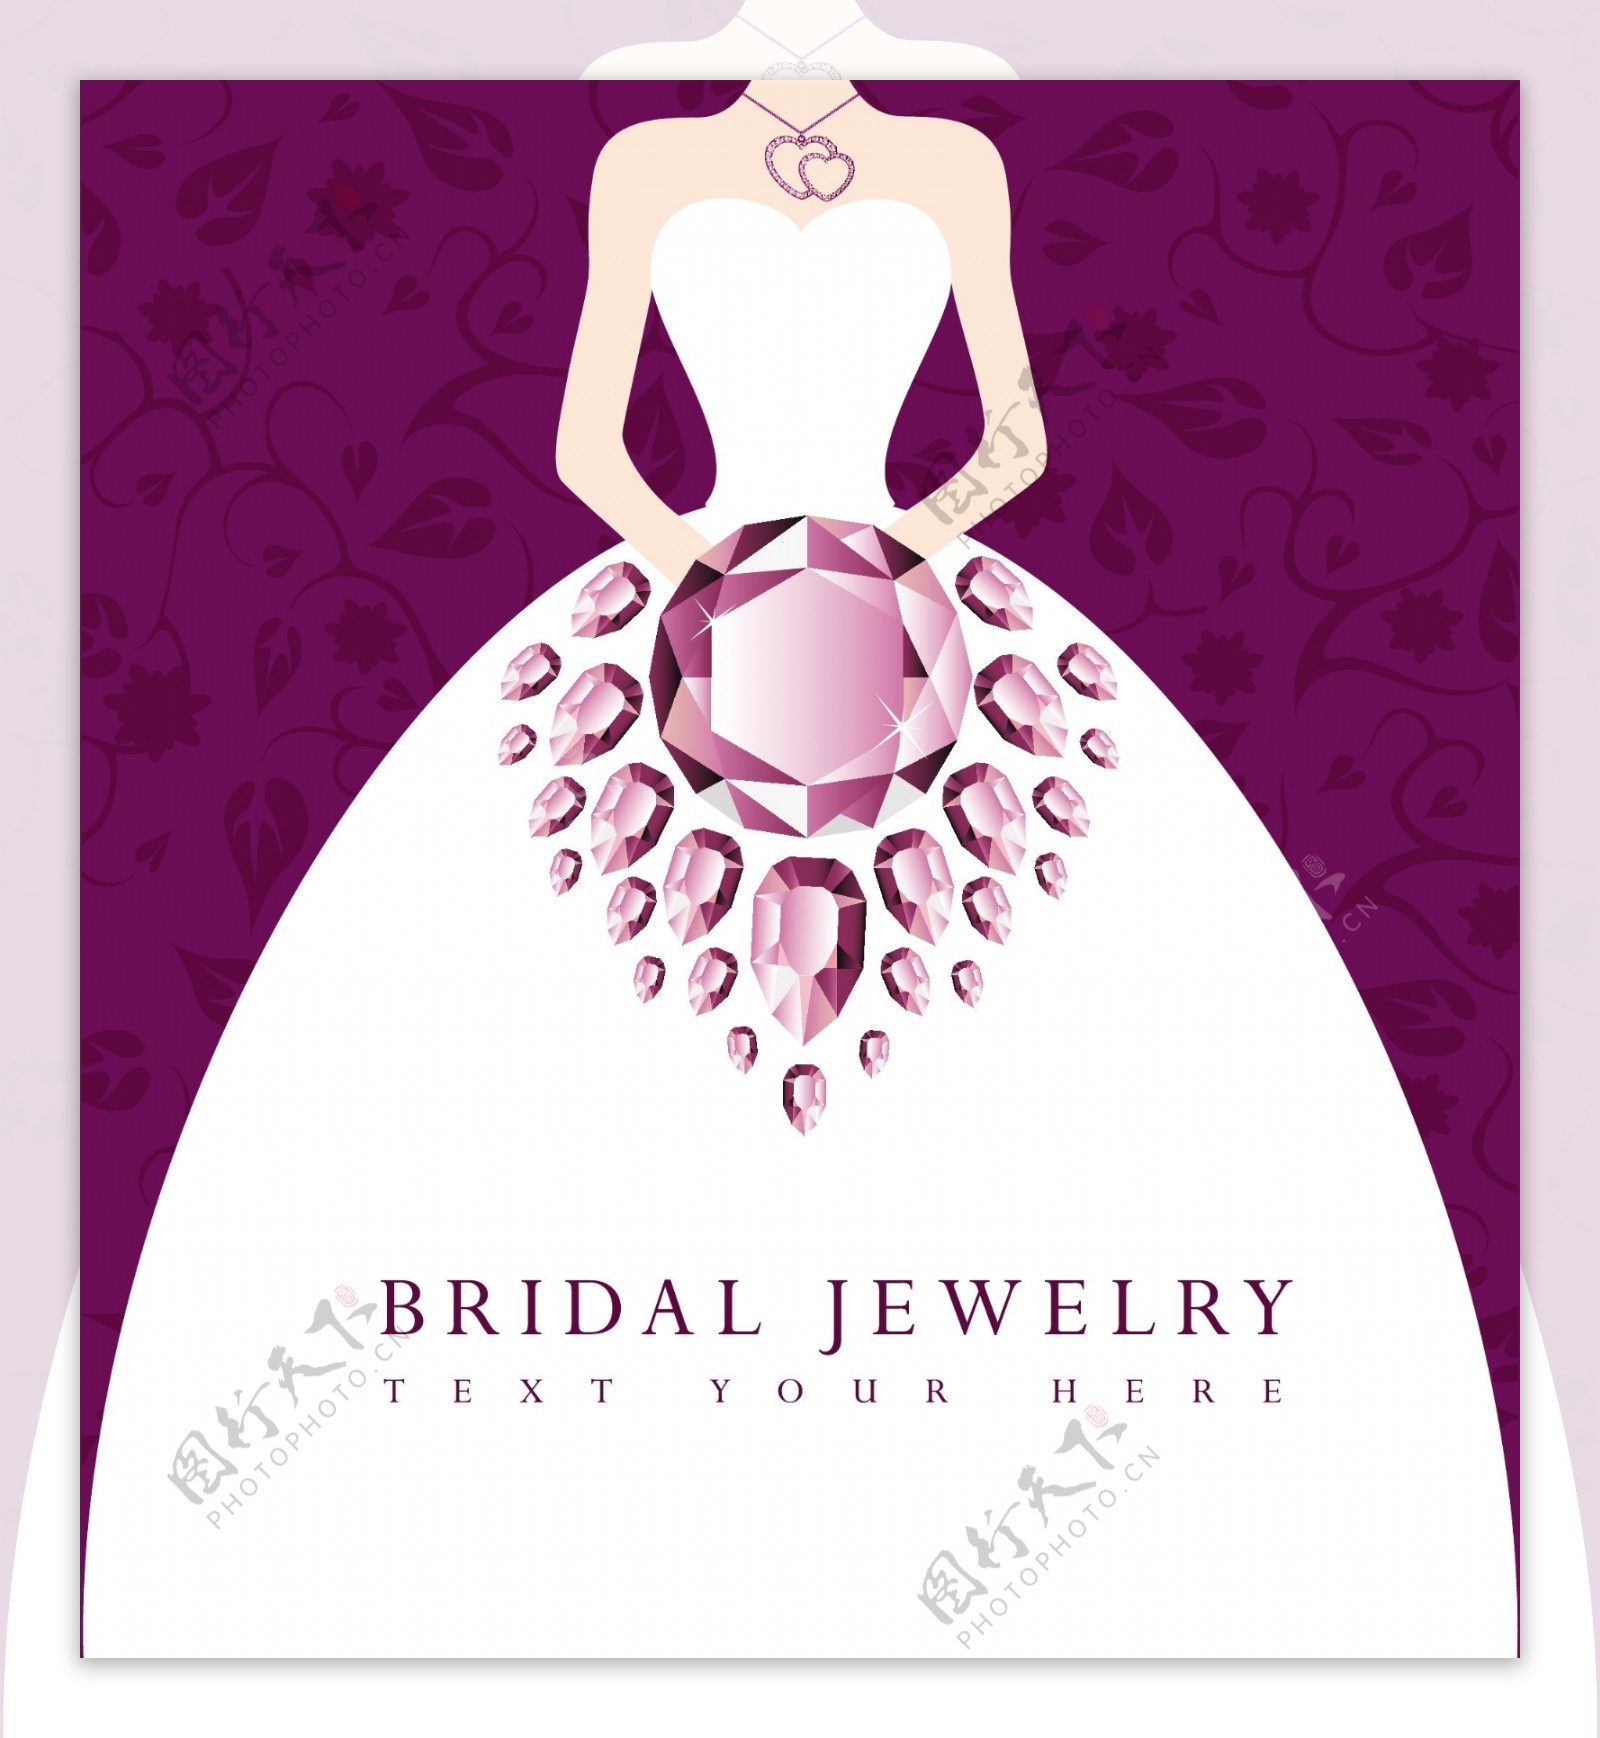 婚礼珠宝海报设计元素